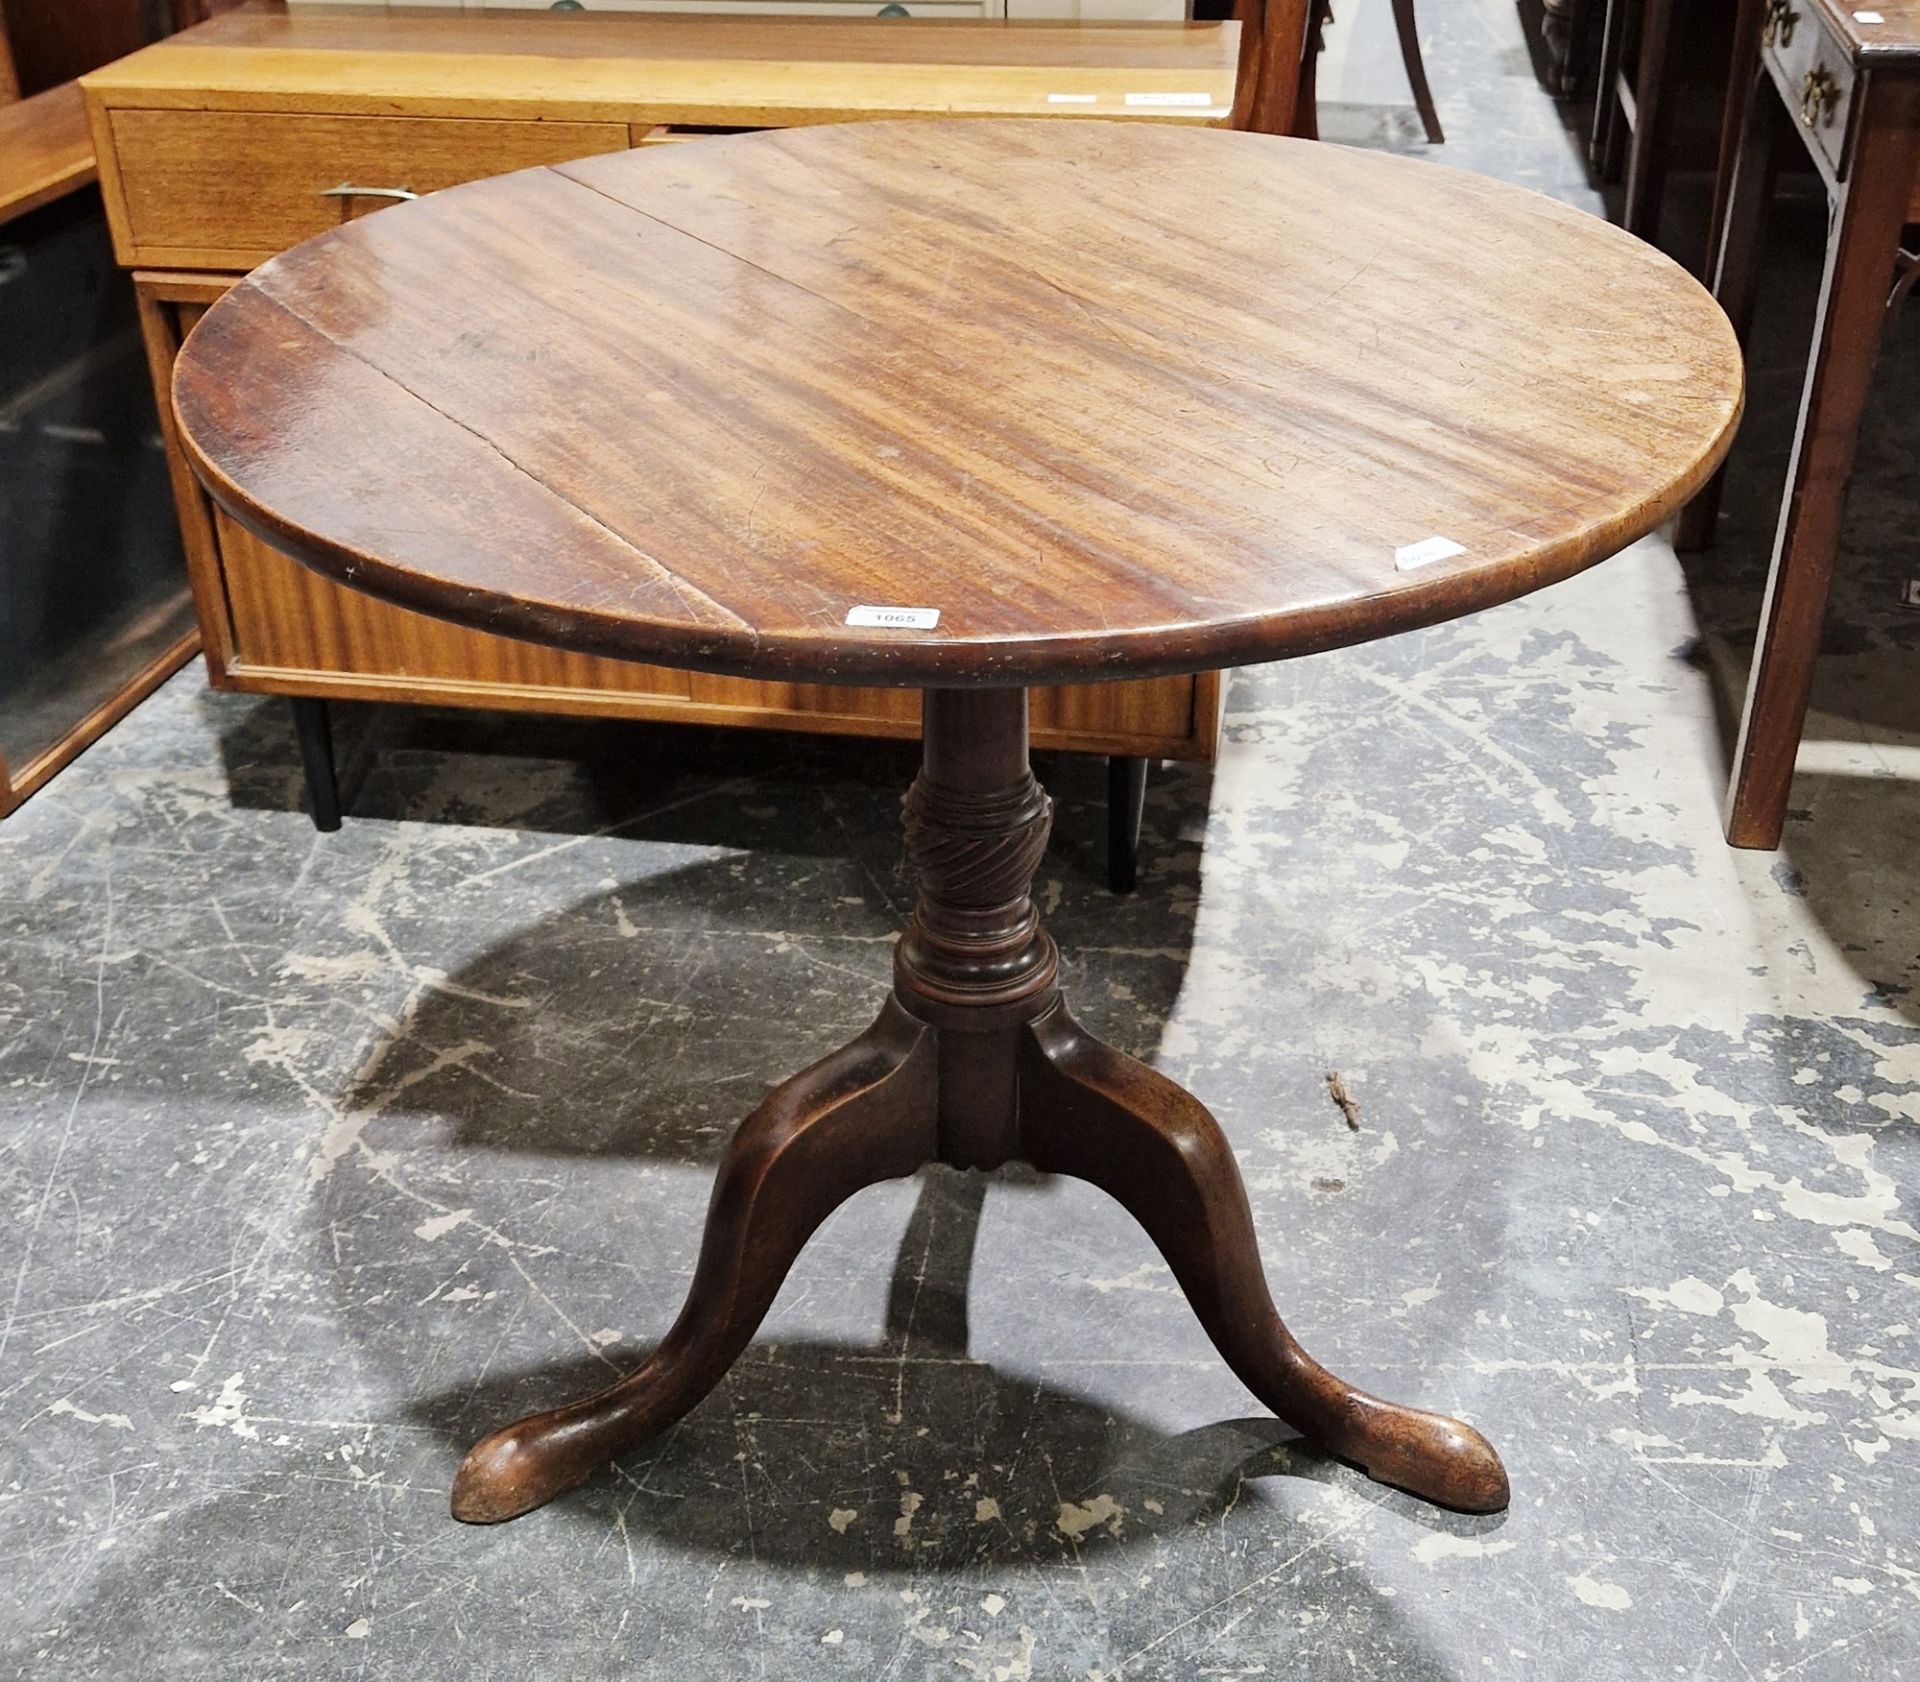 Victorian mahogany tilt-top tripod table of circular form, 69cm high x 80cm diameter